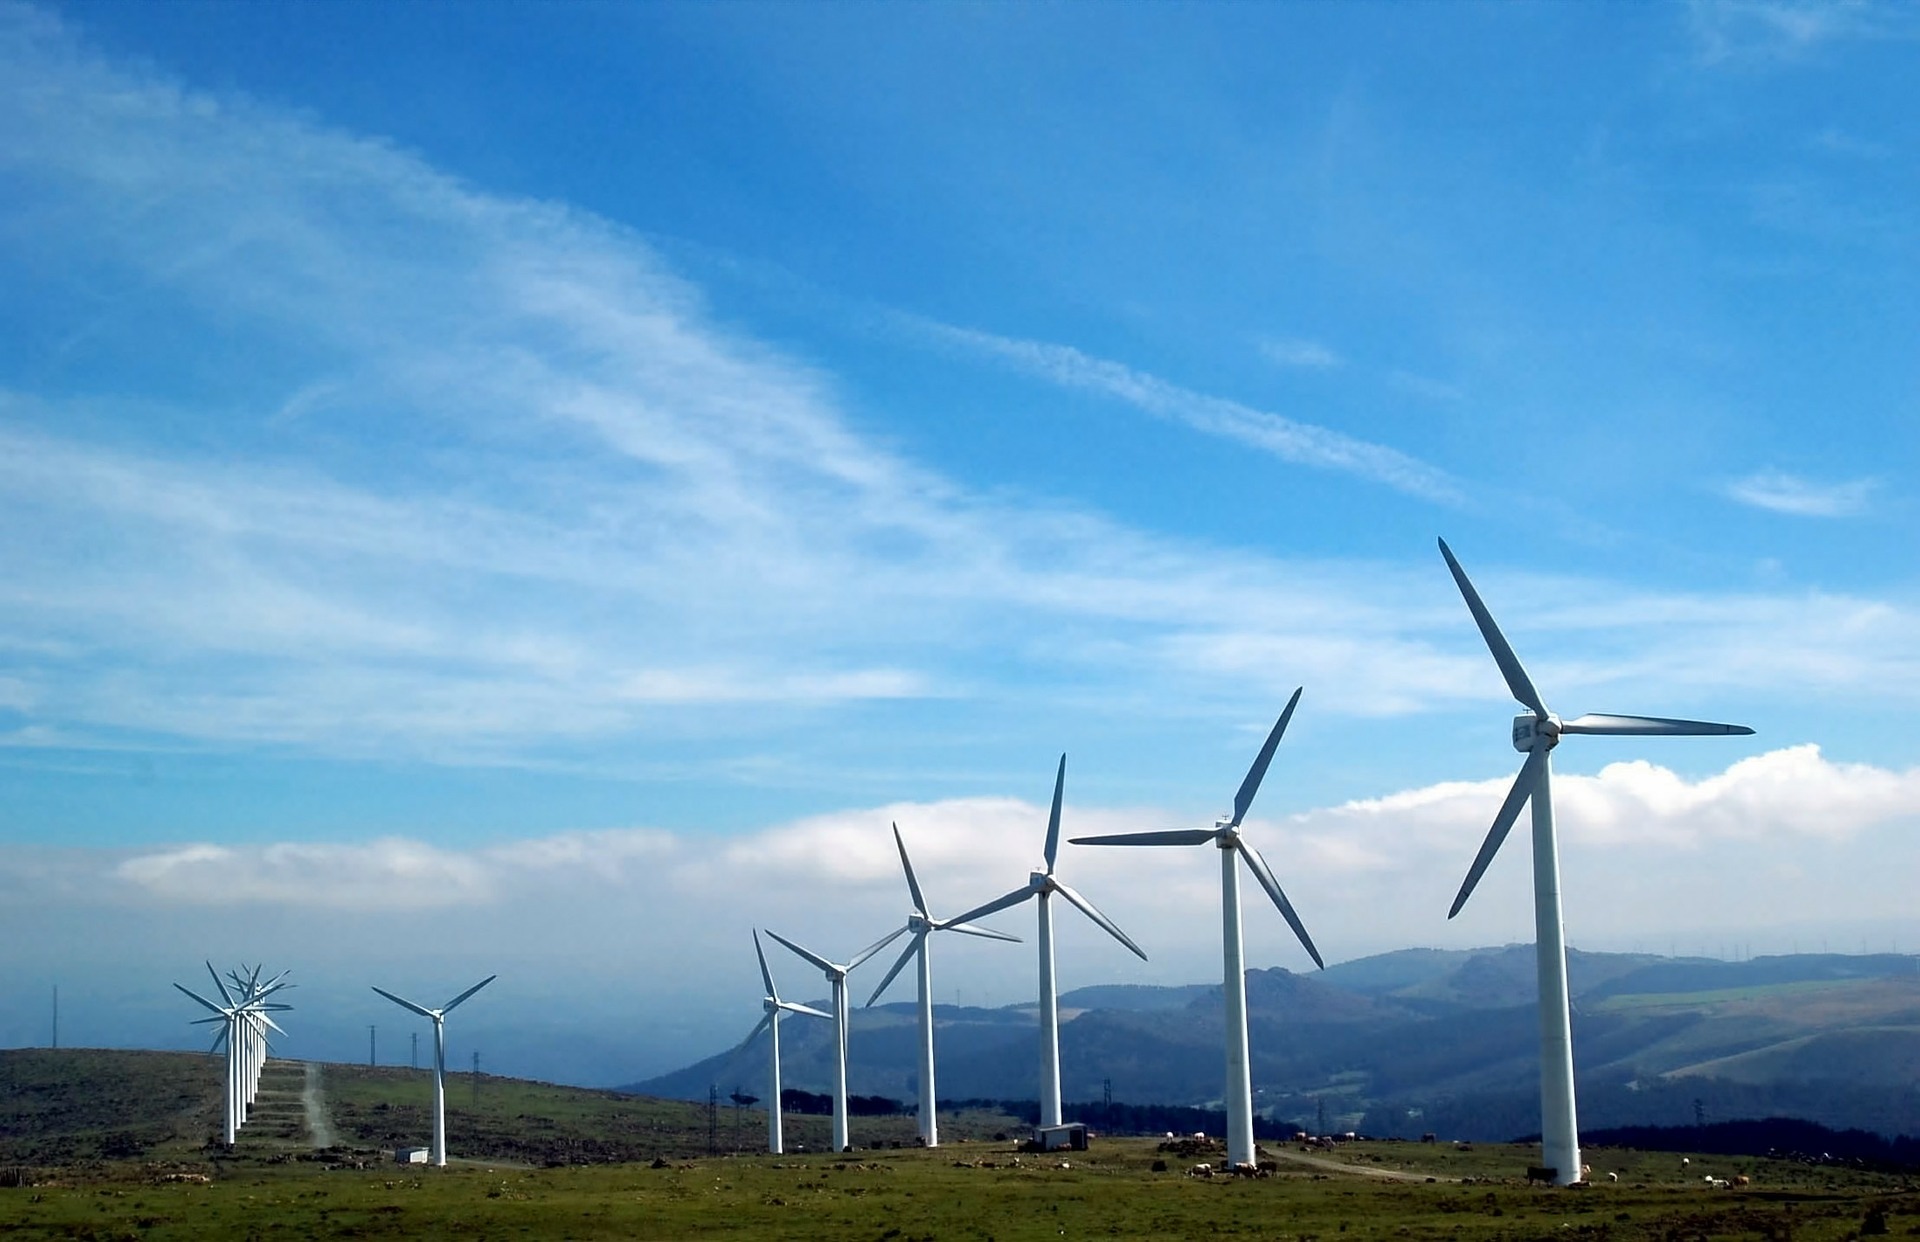 Energia eólica transforma o vento em energia útil: veja como funciona